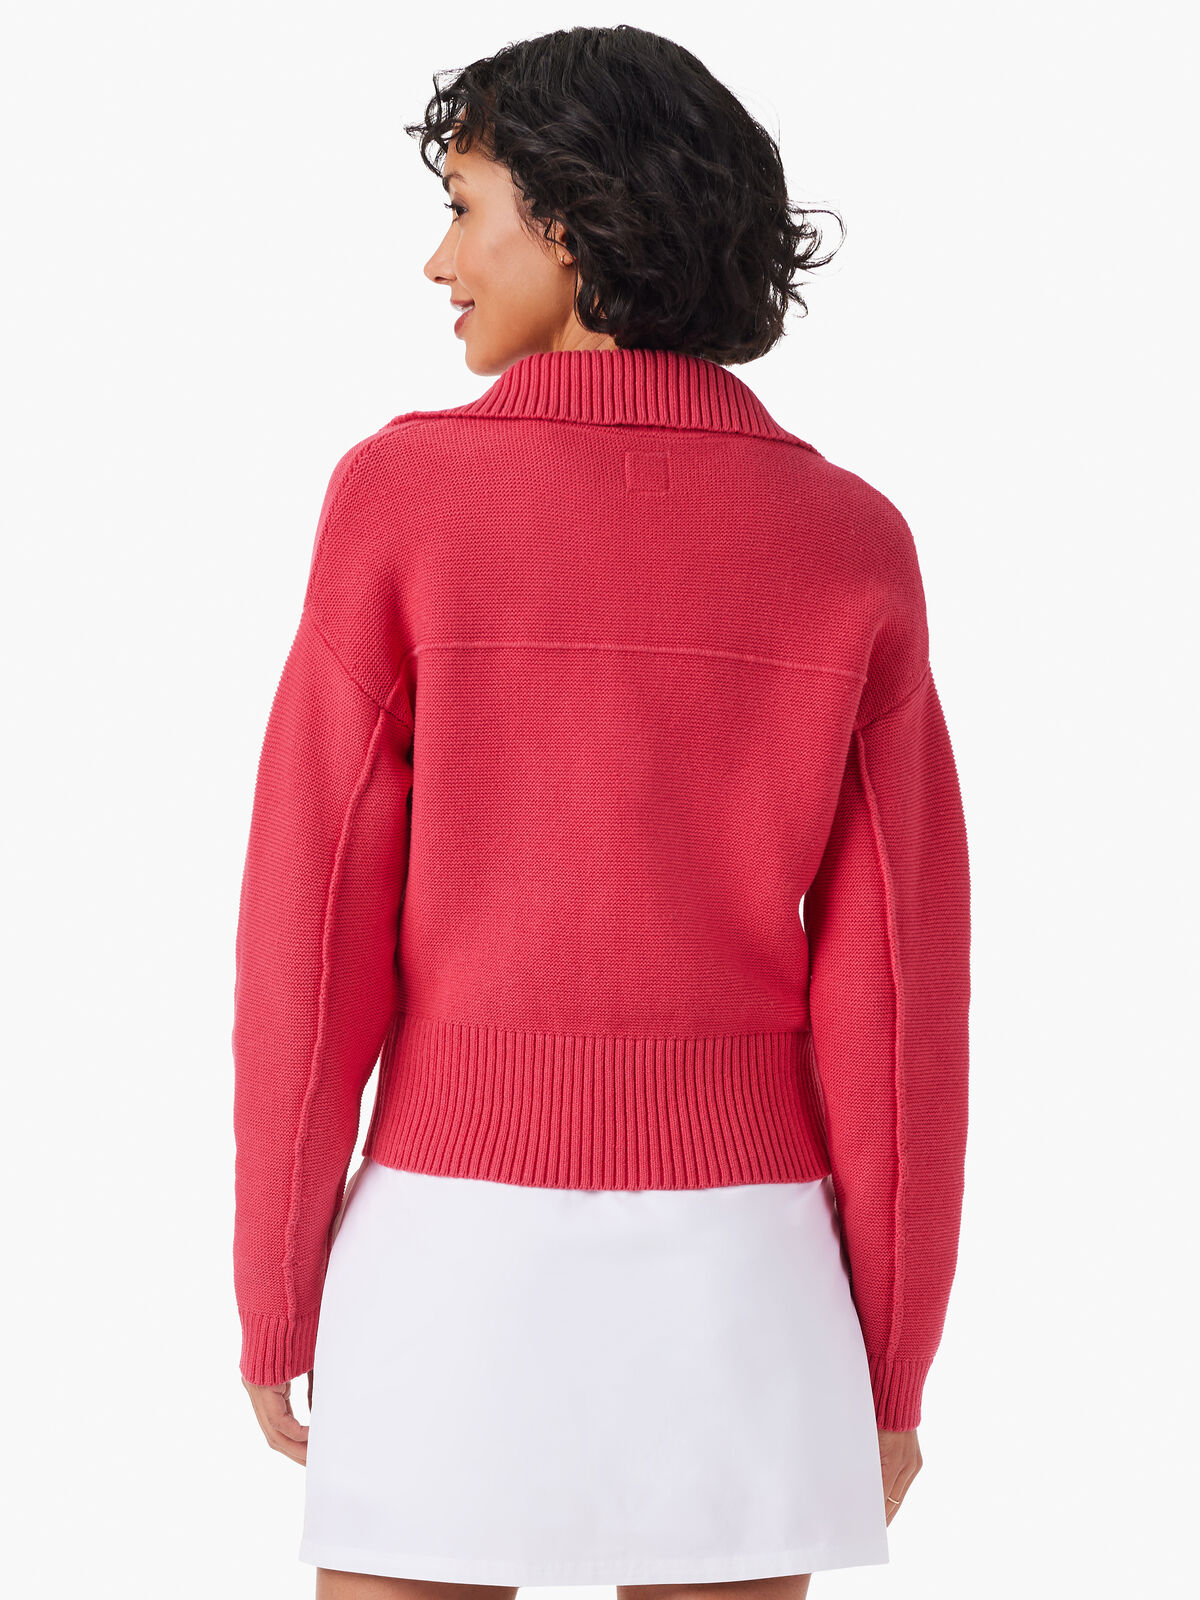 Zip Front Sweater Jacket